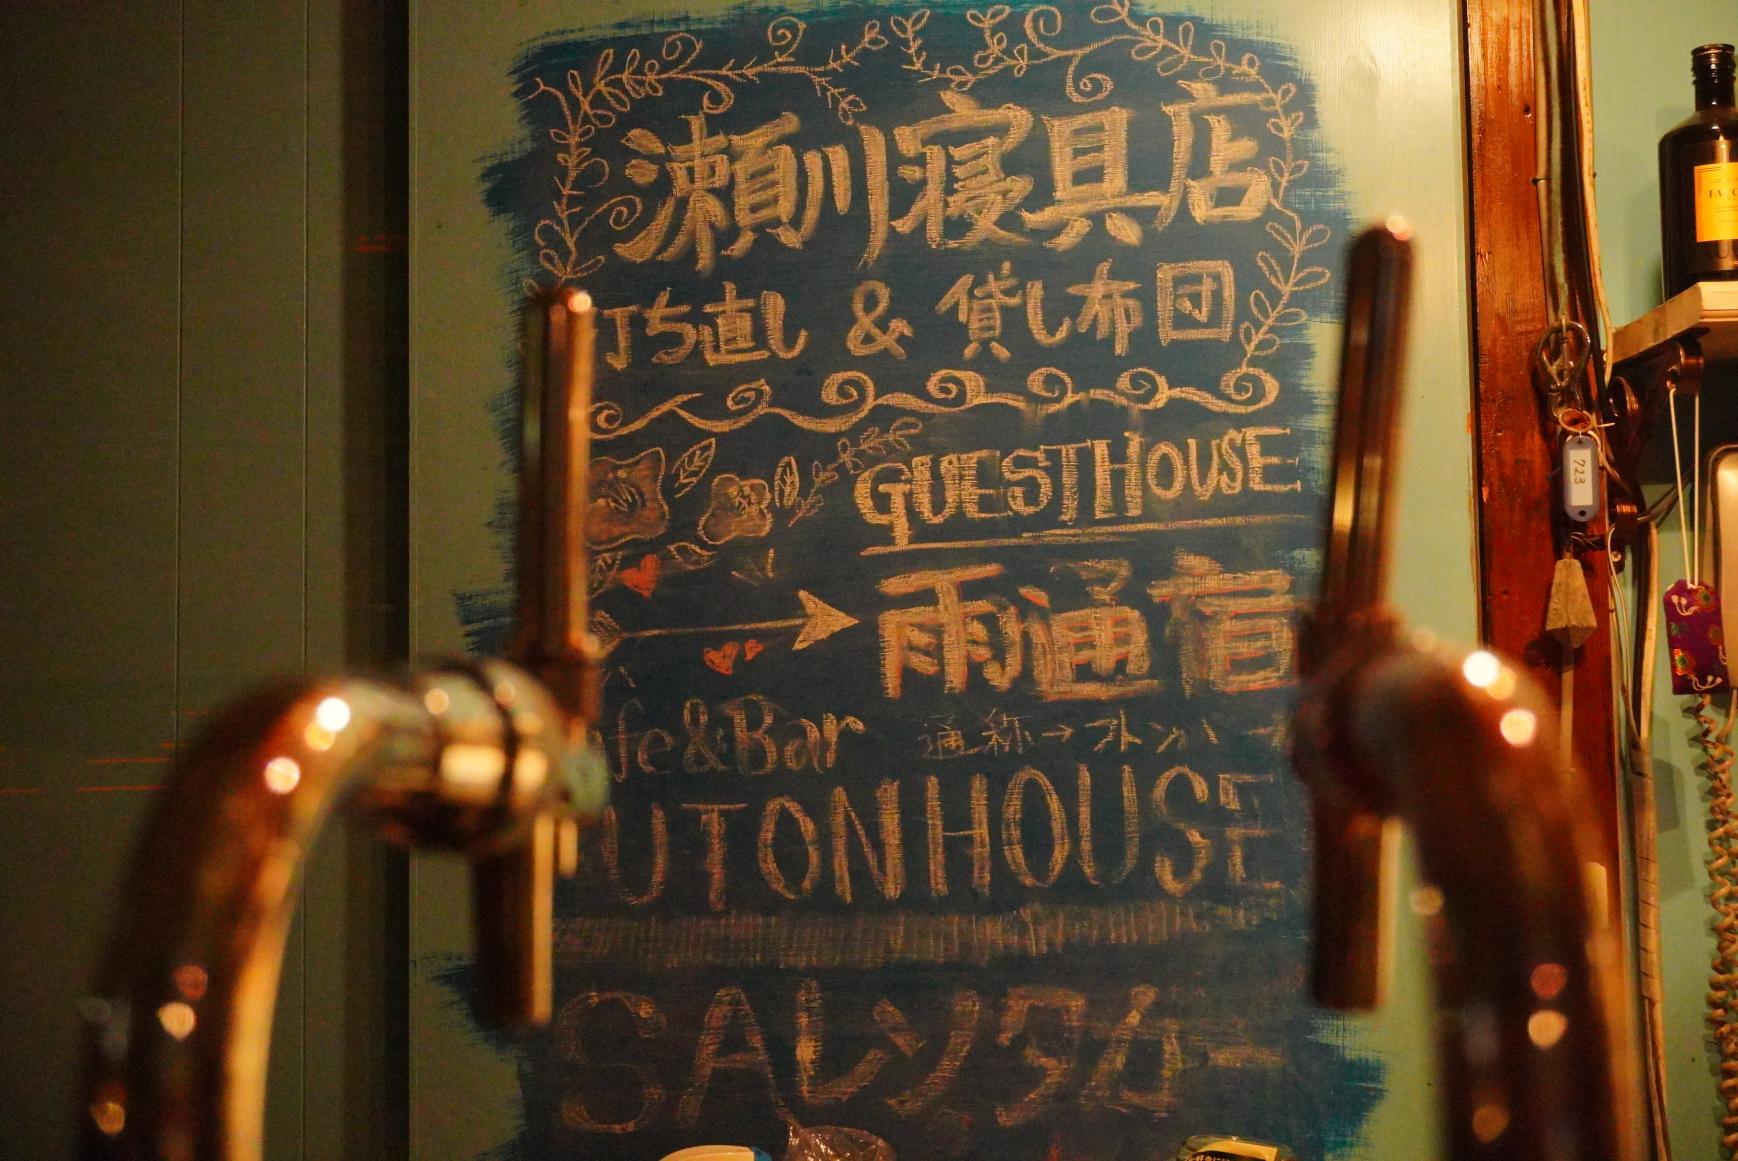 福江地区に戻り、夜はゲストハウスに併設の地元の人も集まるCafe and Bar Futon House　へ！-0